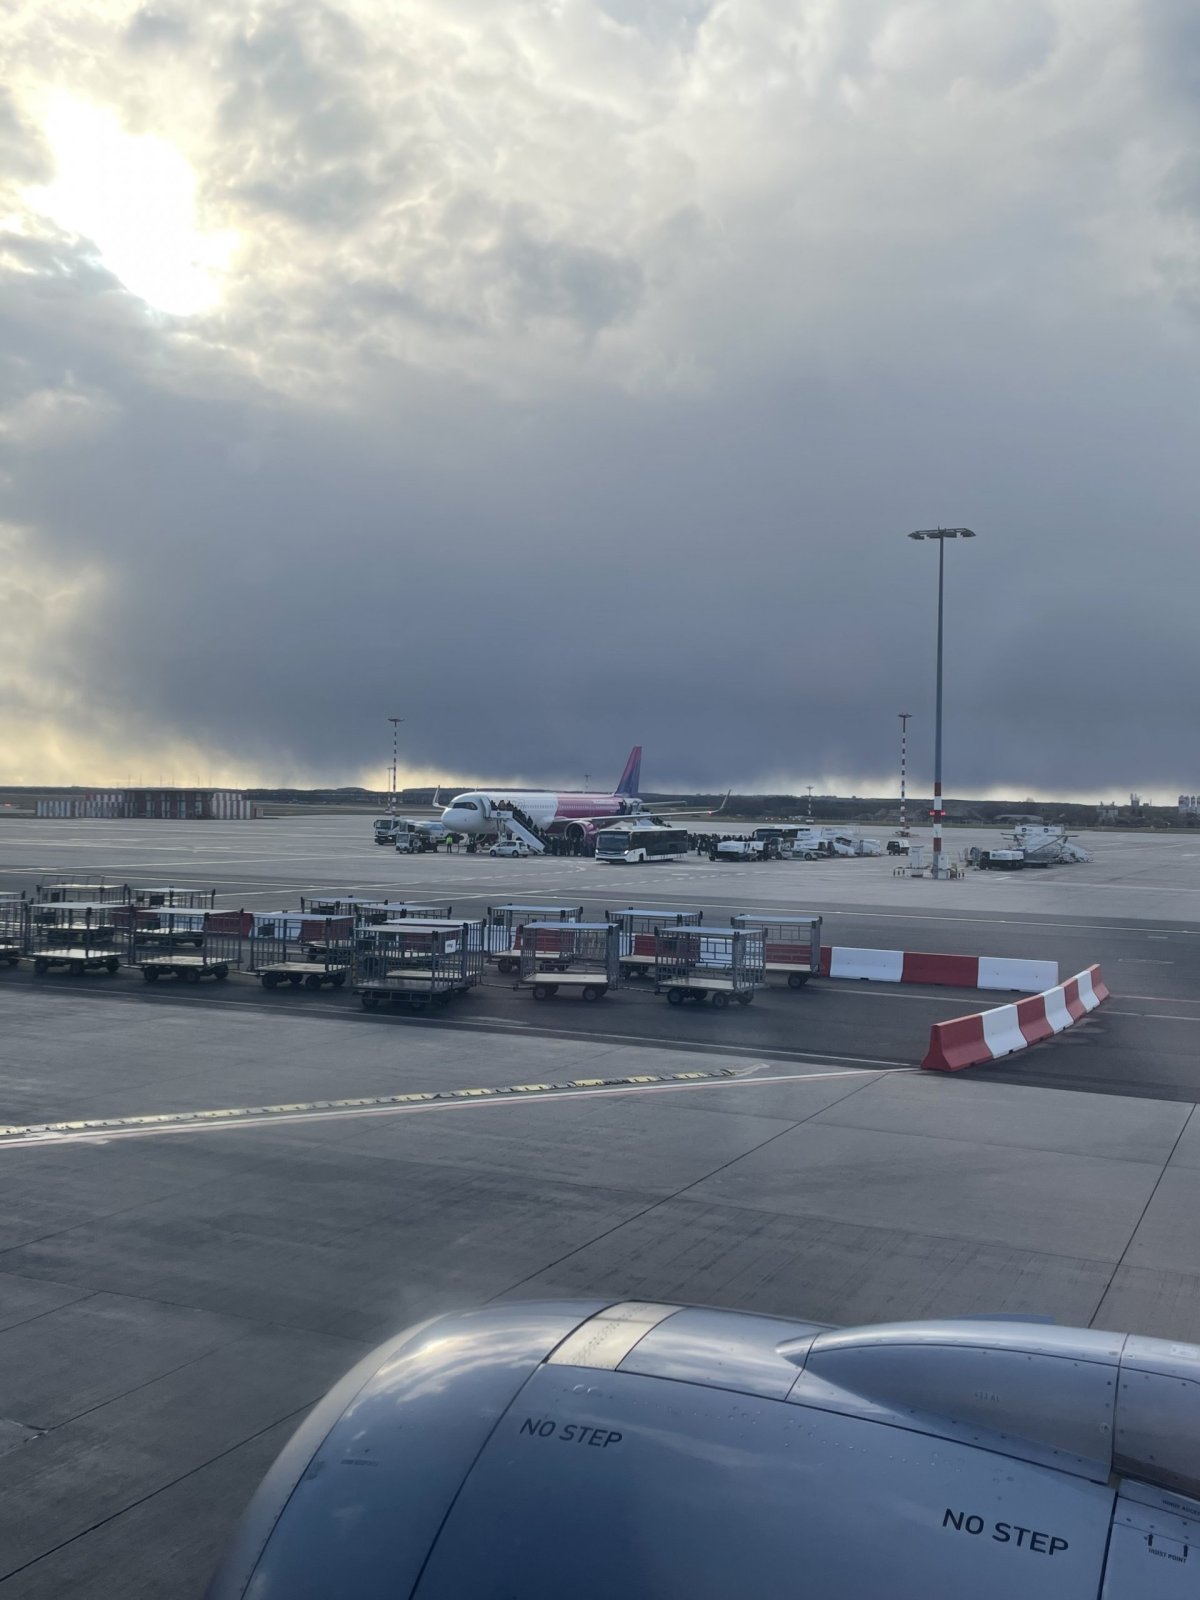 Letiště Praha, A321 Neo